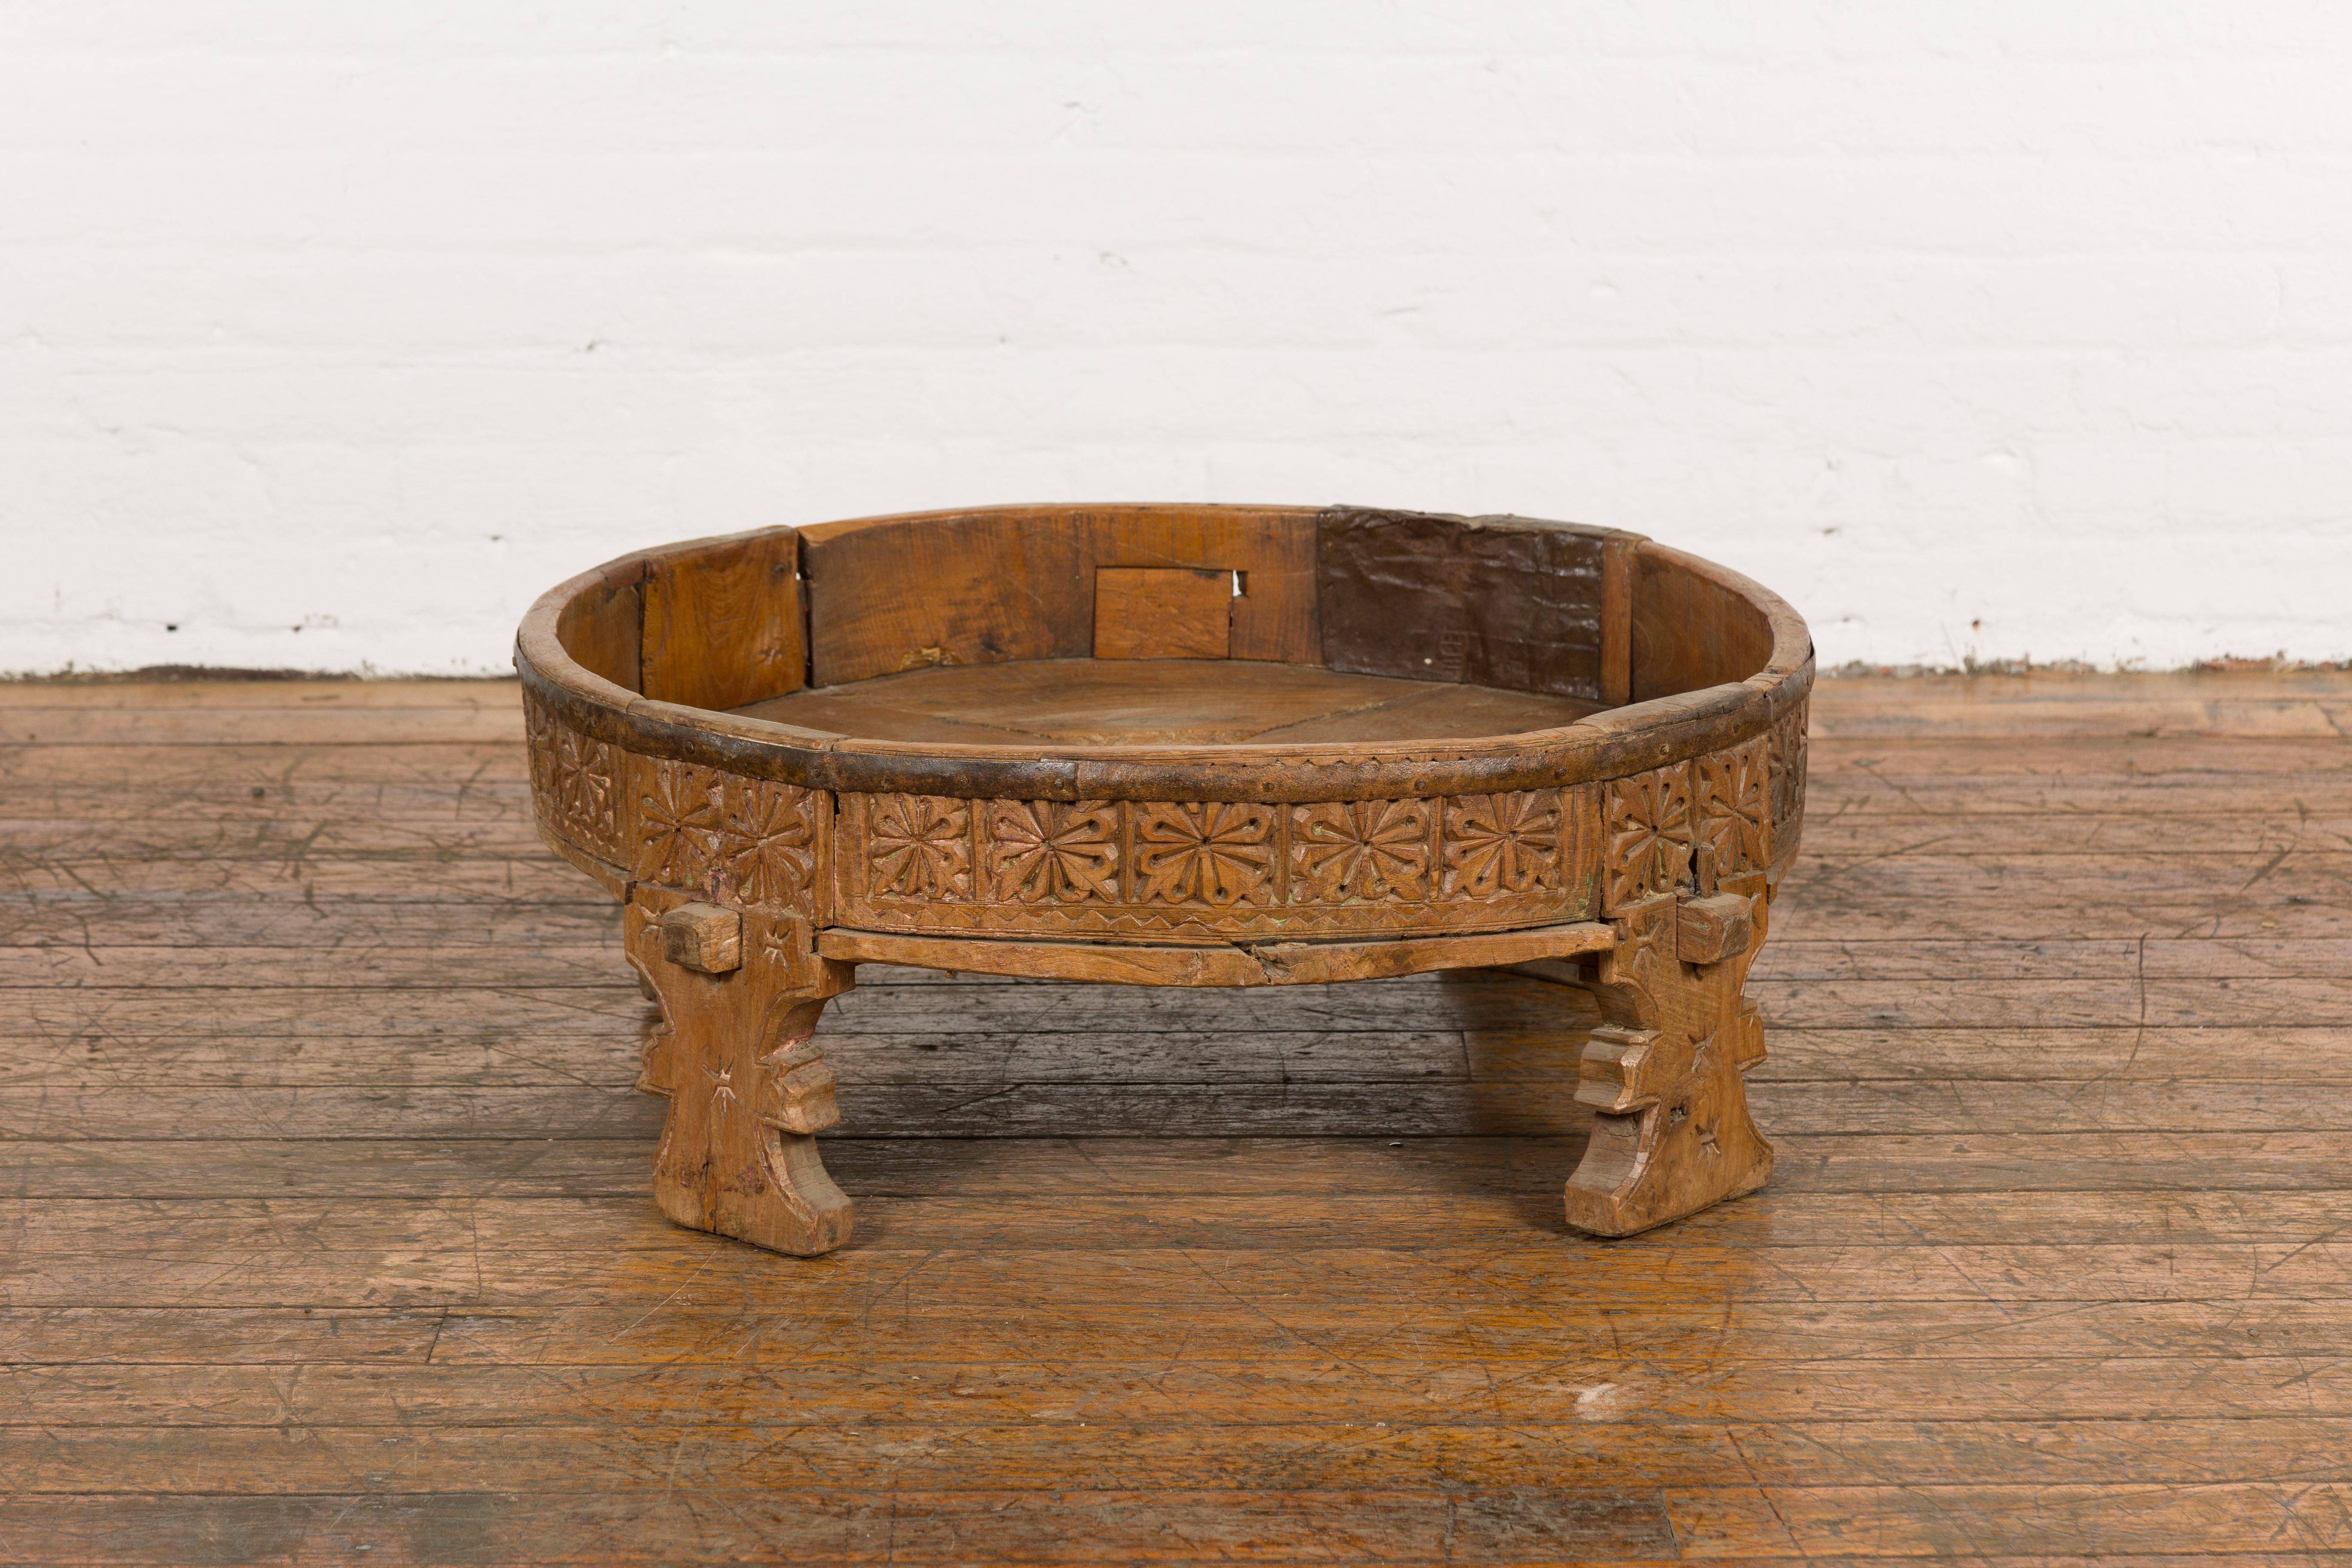 Table à moudre Chakki en bois de teck rustique tribal indien des années 1920, avec des motifs géométriques sculptés à la main, un centre percé, des pieds sculptés et une patine d'usage. Entrez dans le charme de l'artisanat indien traditionnel avec